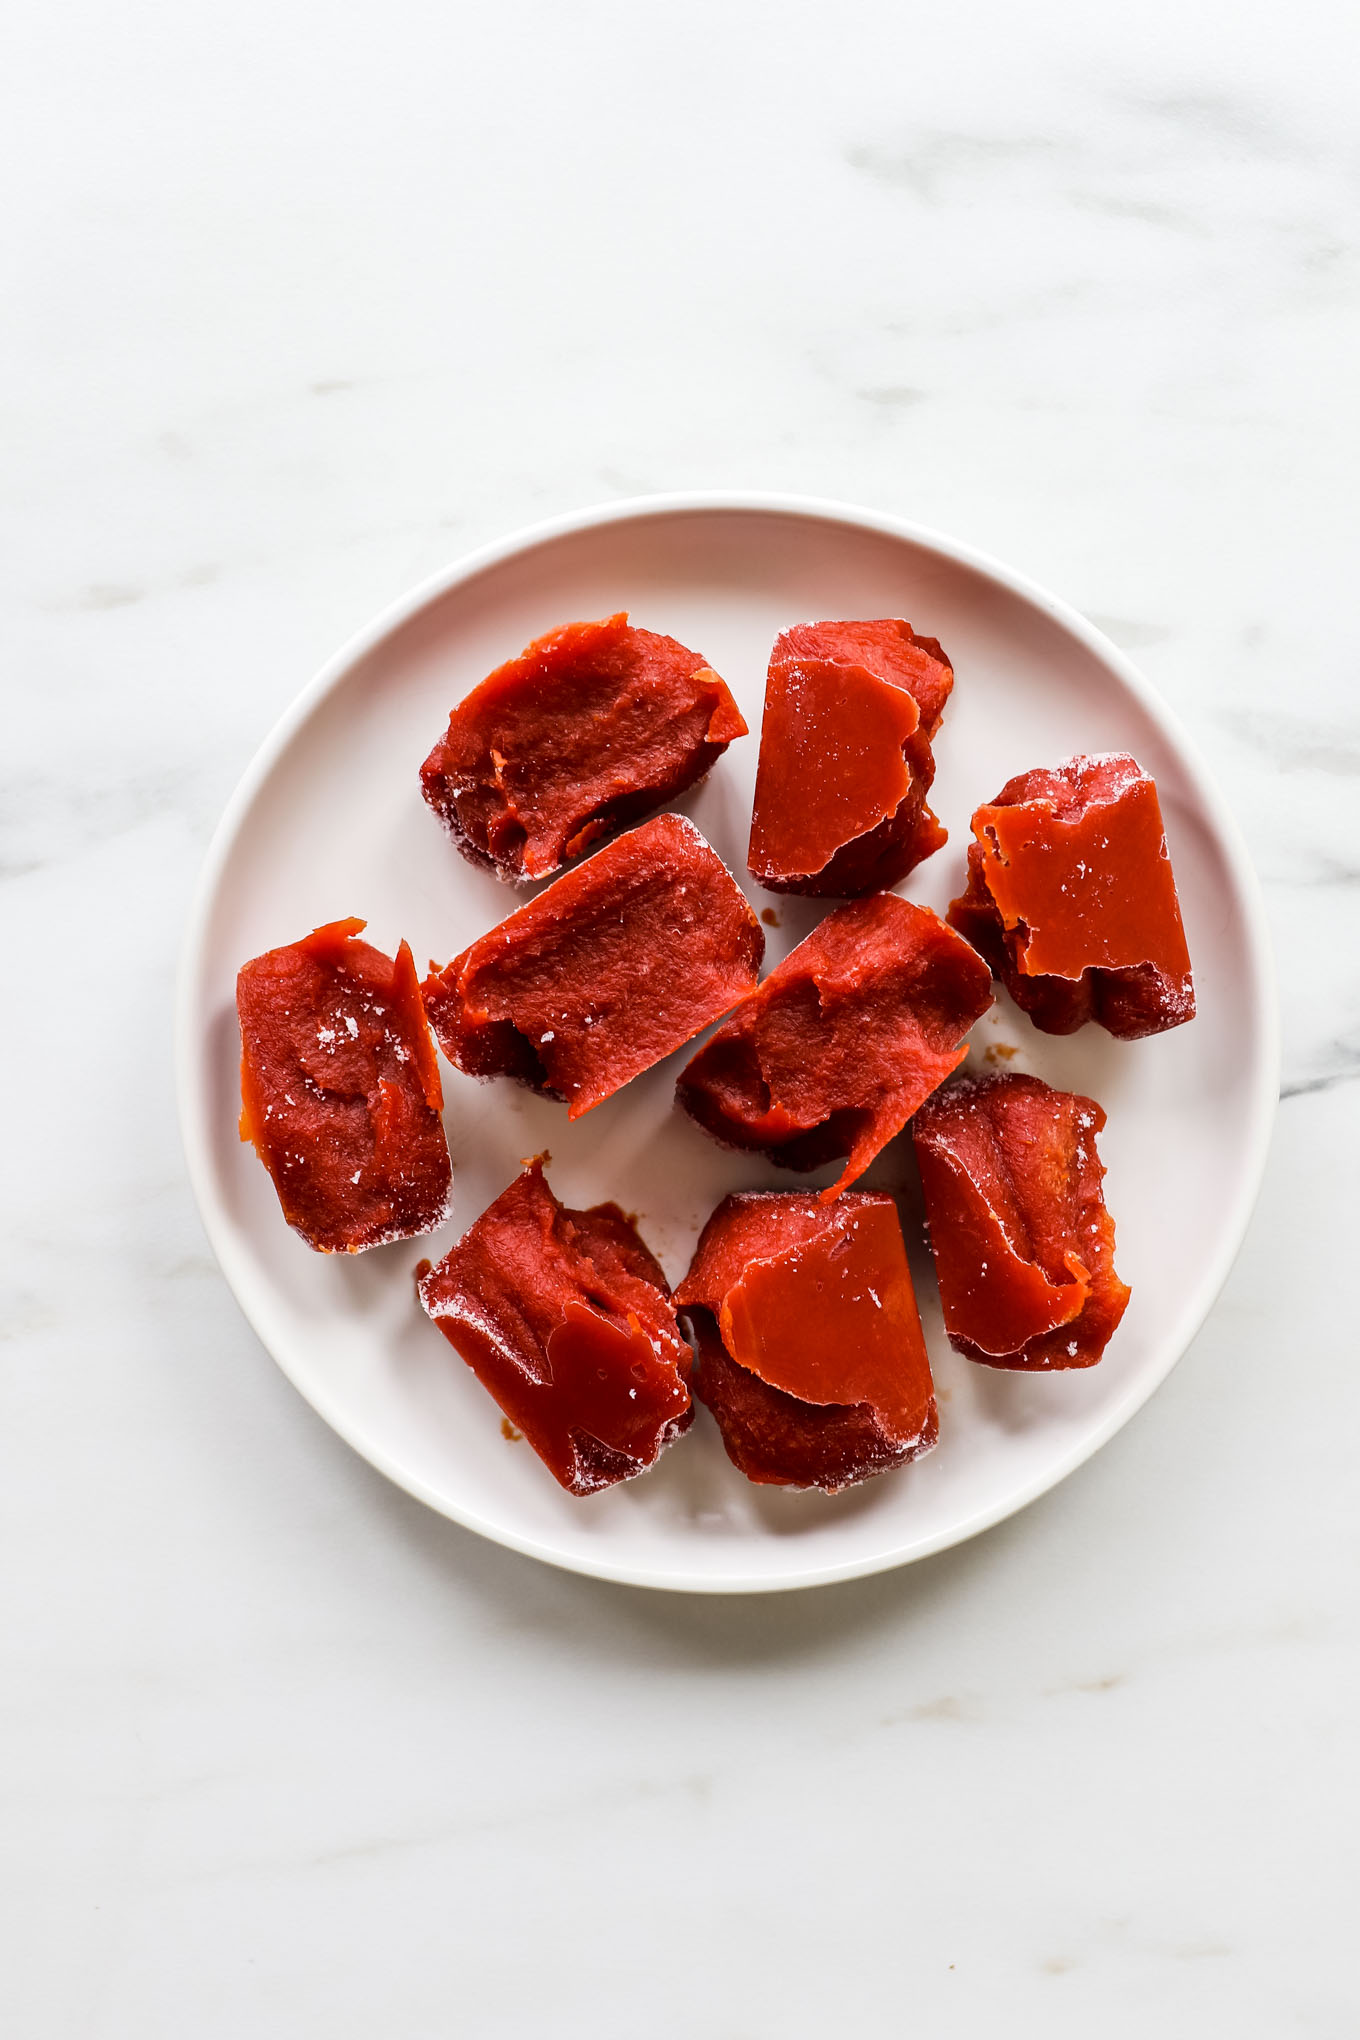 frugal food hacks: freeze leftover tomato paste